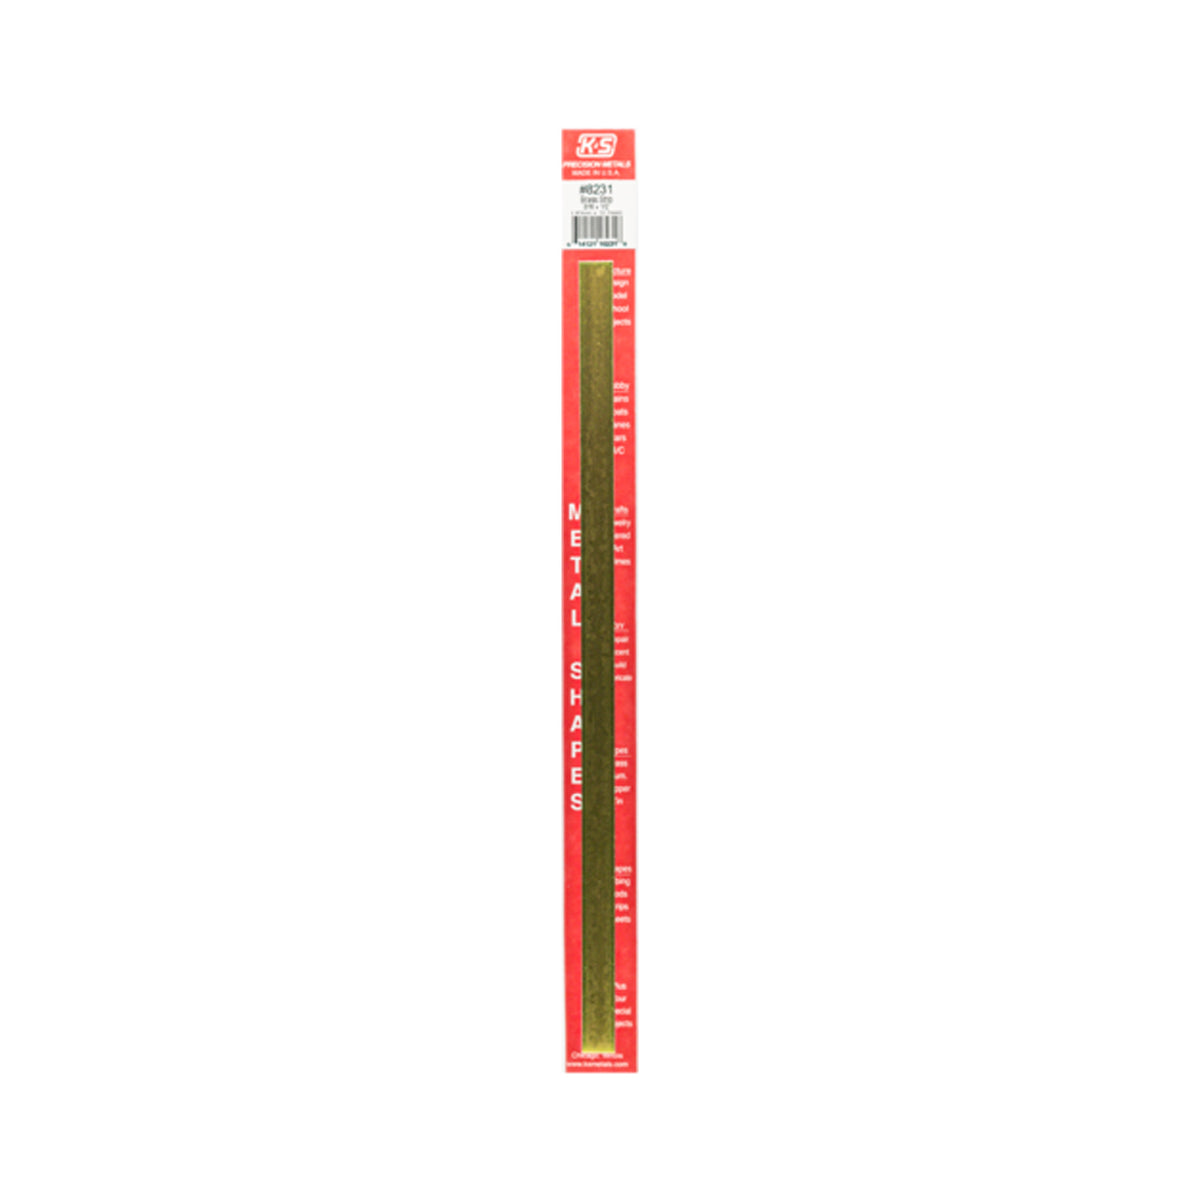 K&S™ Brass Strip: 0.016" Thick x 1/2" Wide x 12" Long (1 Piece)